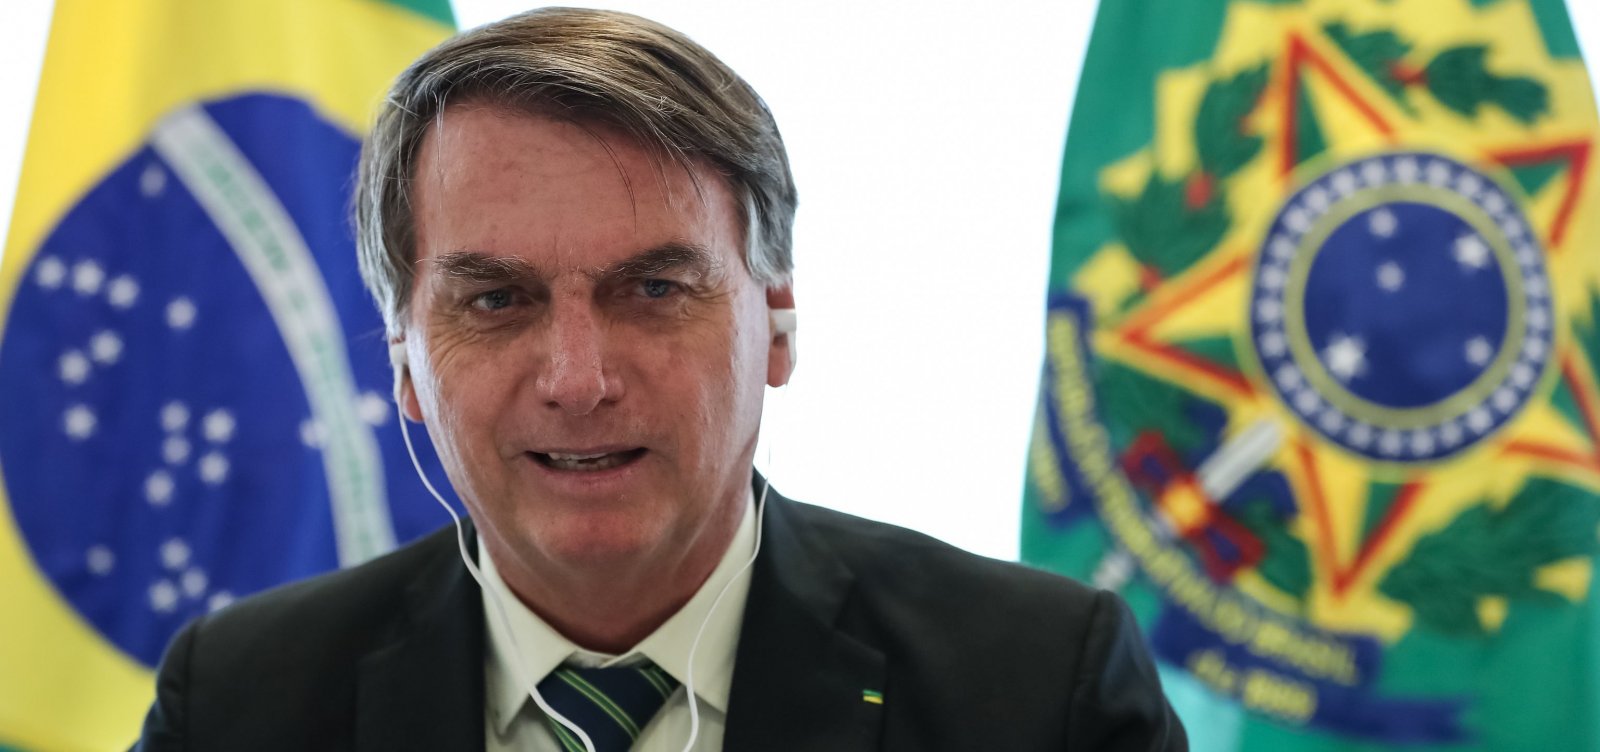 MPF processa União por falas machistas de Bolsonaro e ministros